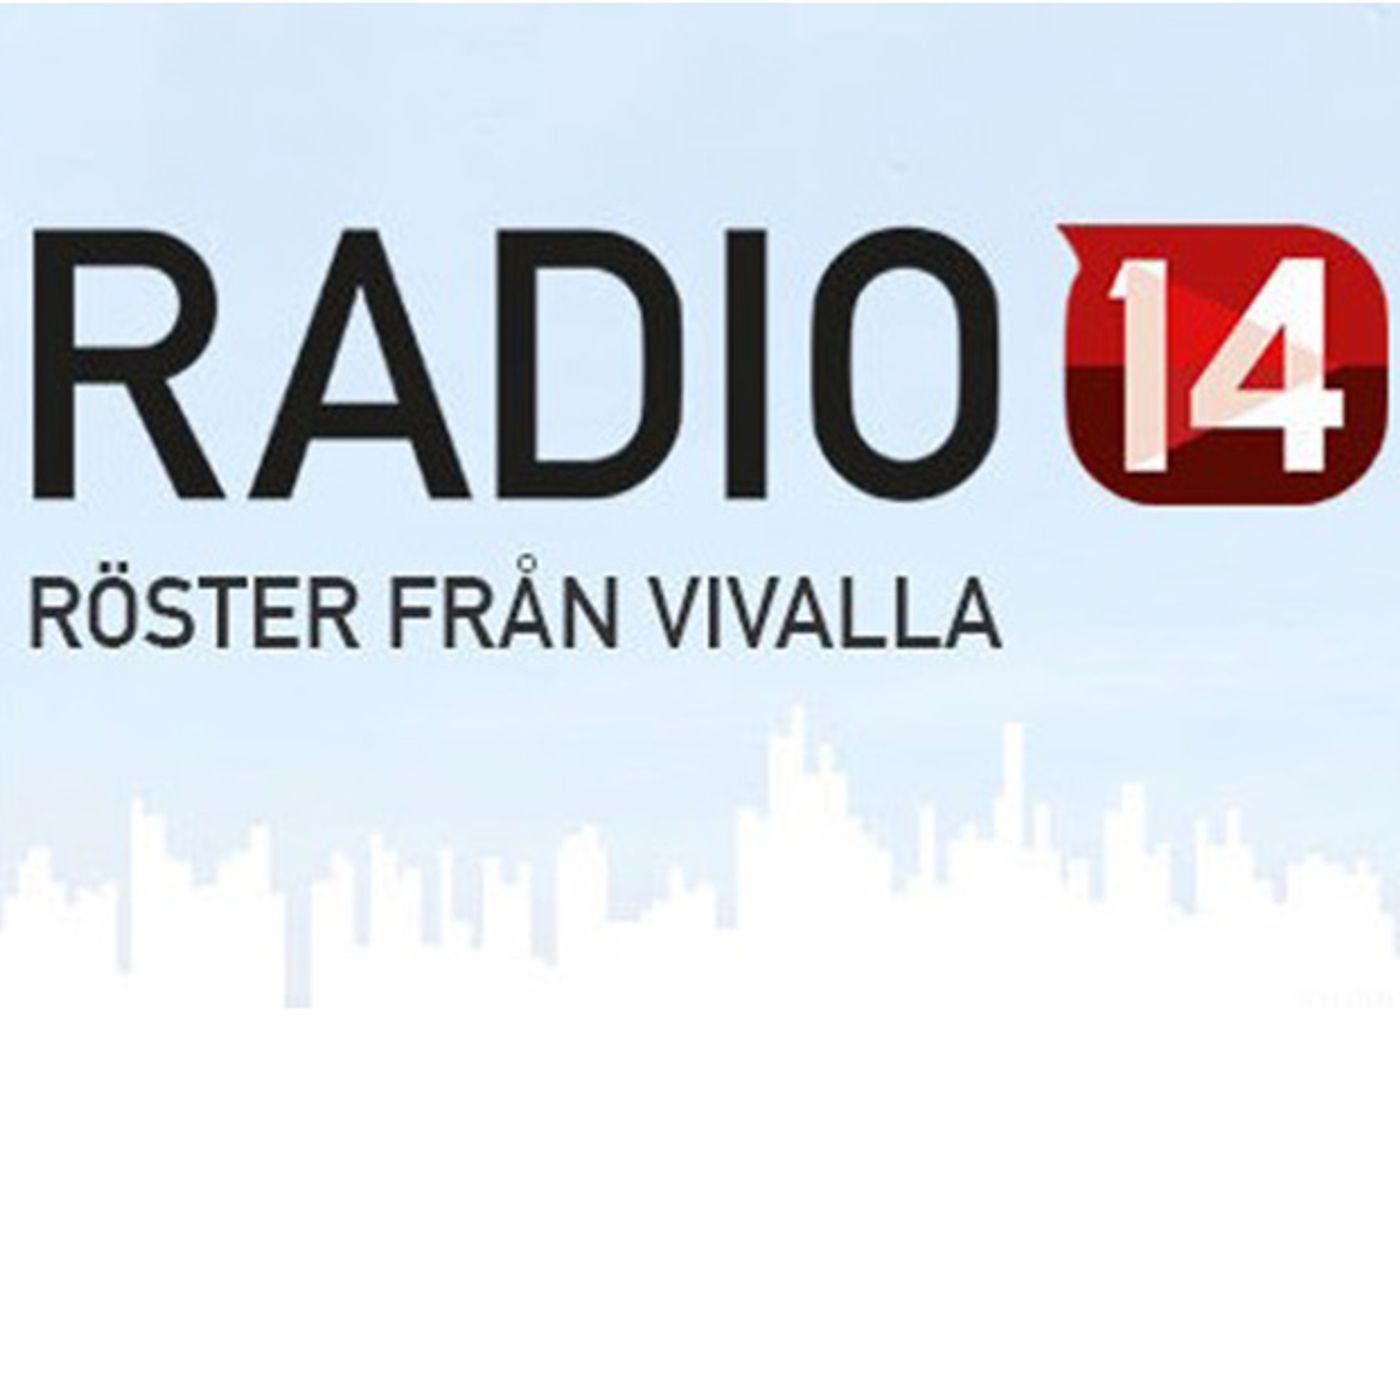 Radio14